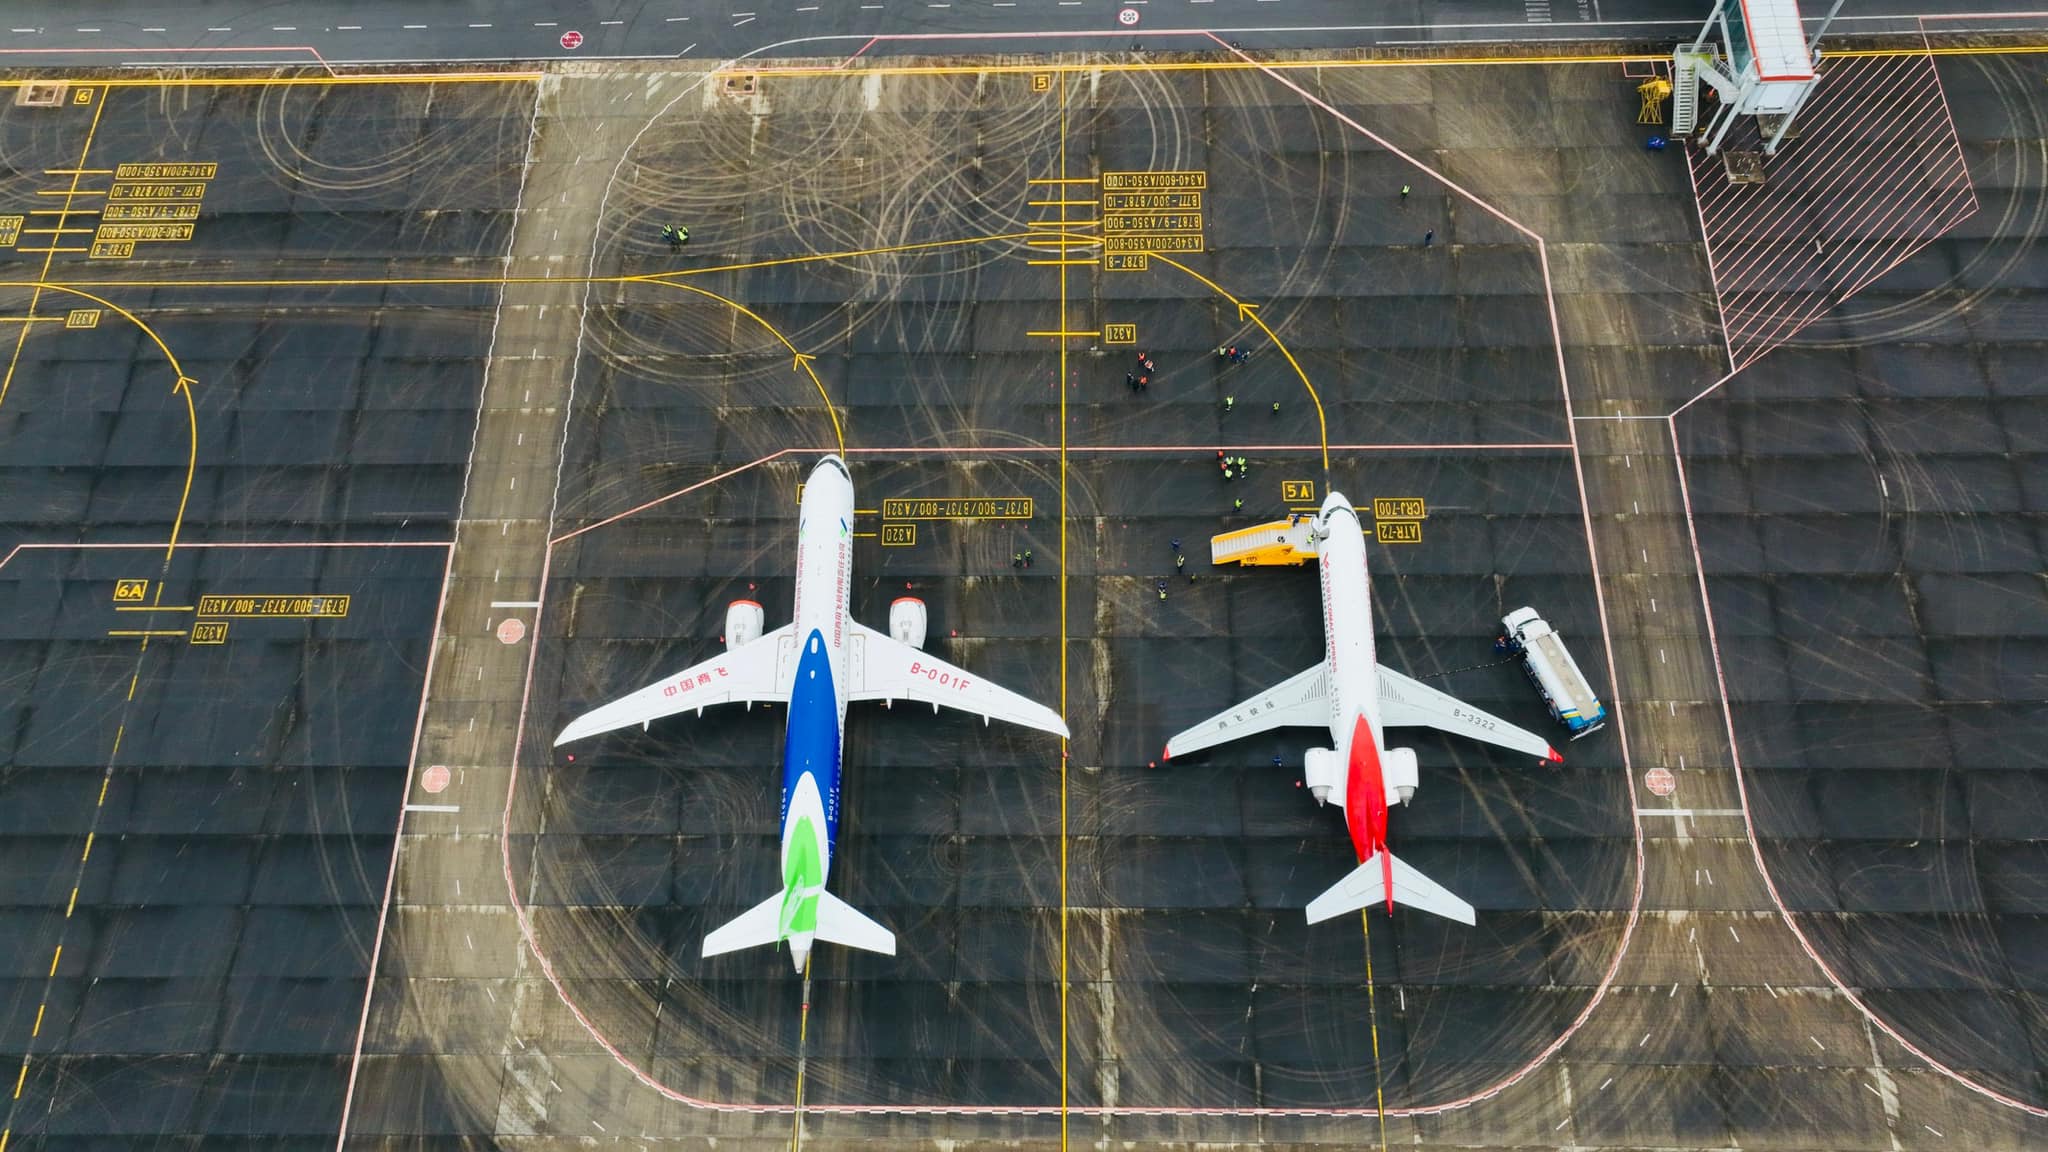 Sân bay Vân Đồn đón máy bay “made in China” đến trình diễn và triển lãm - 3